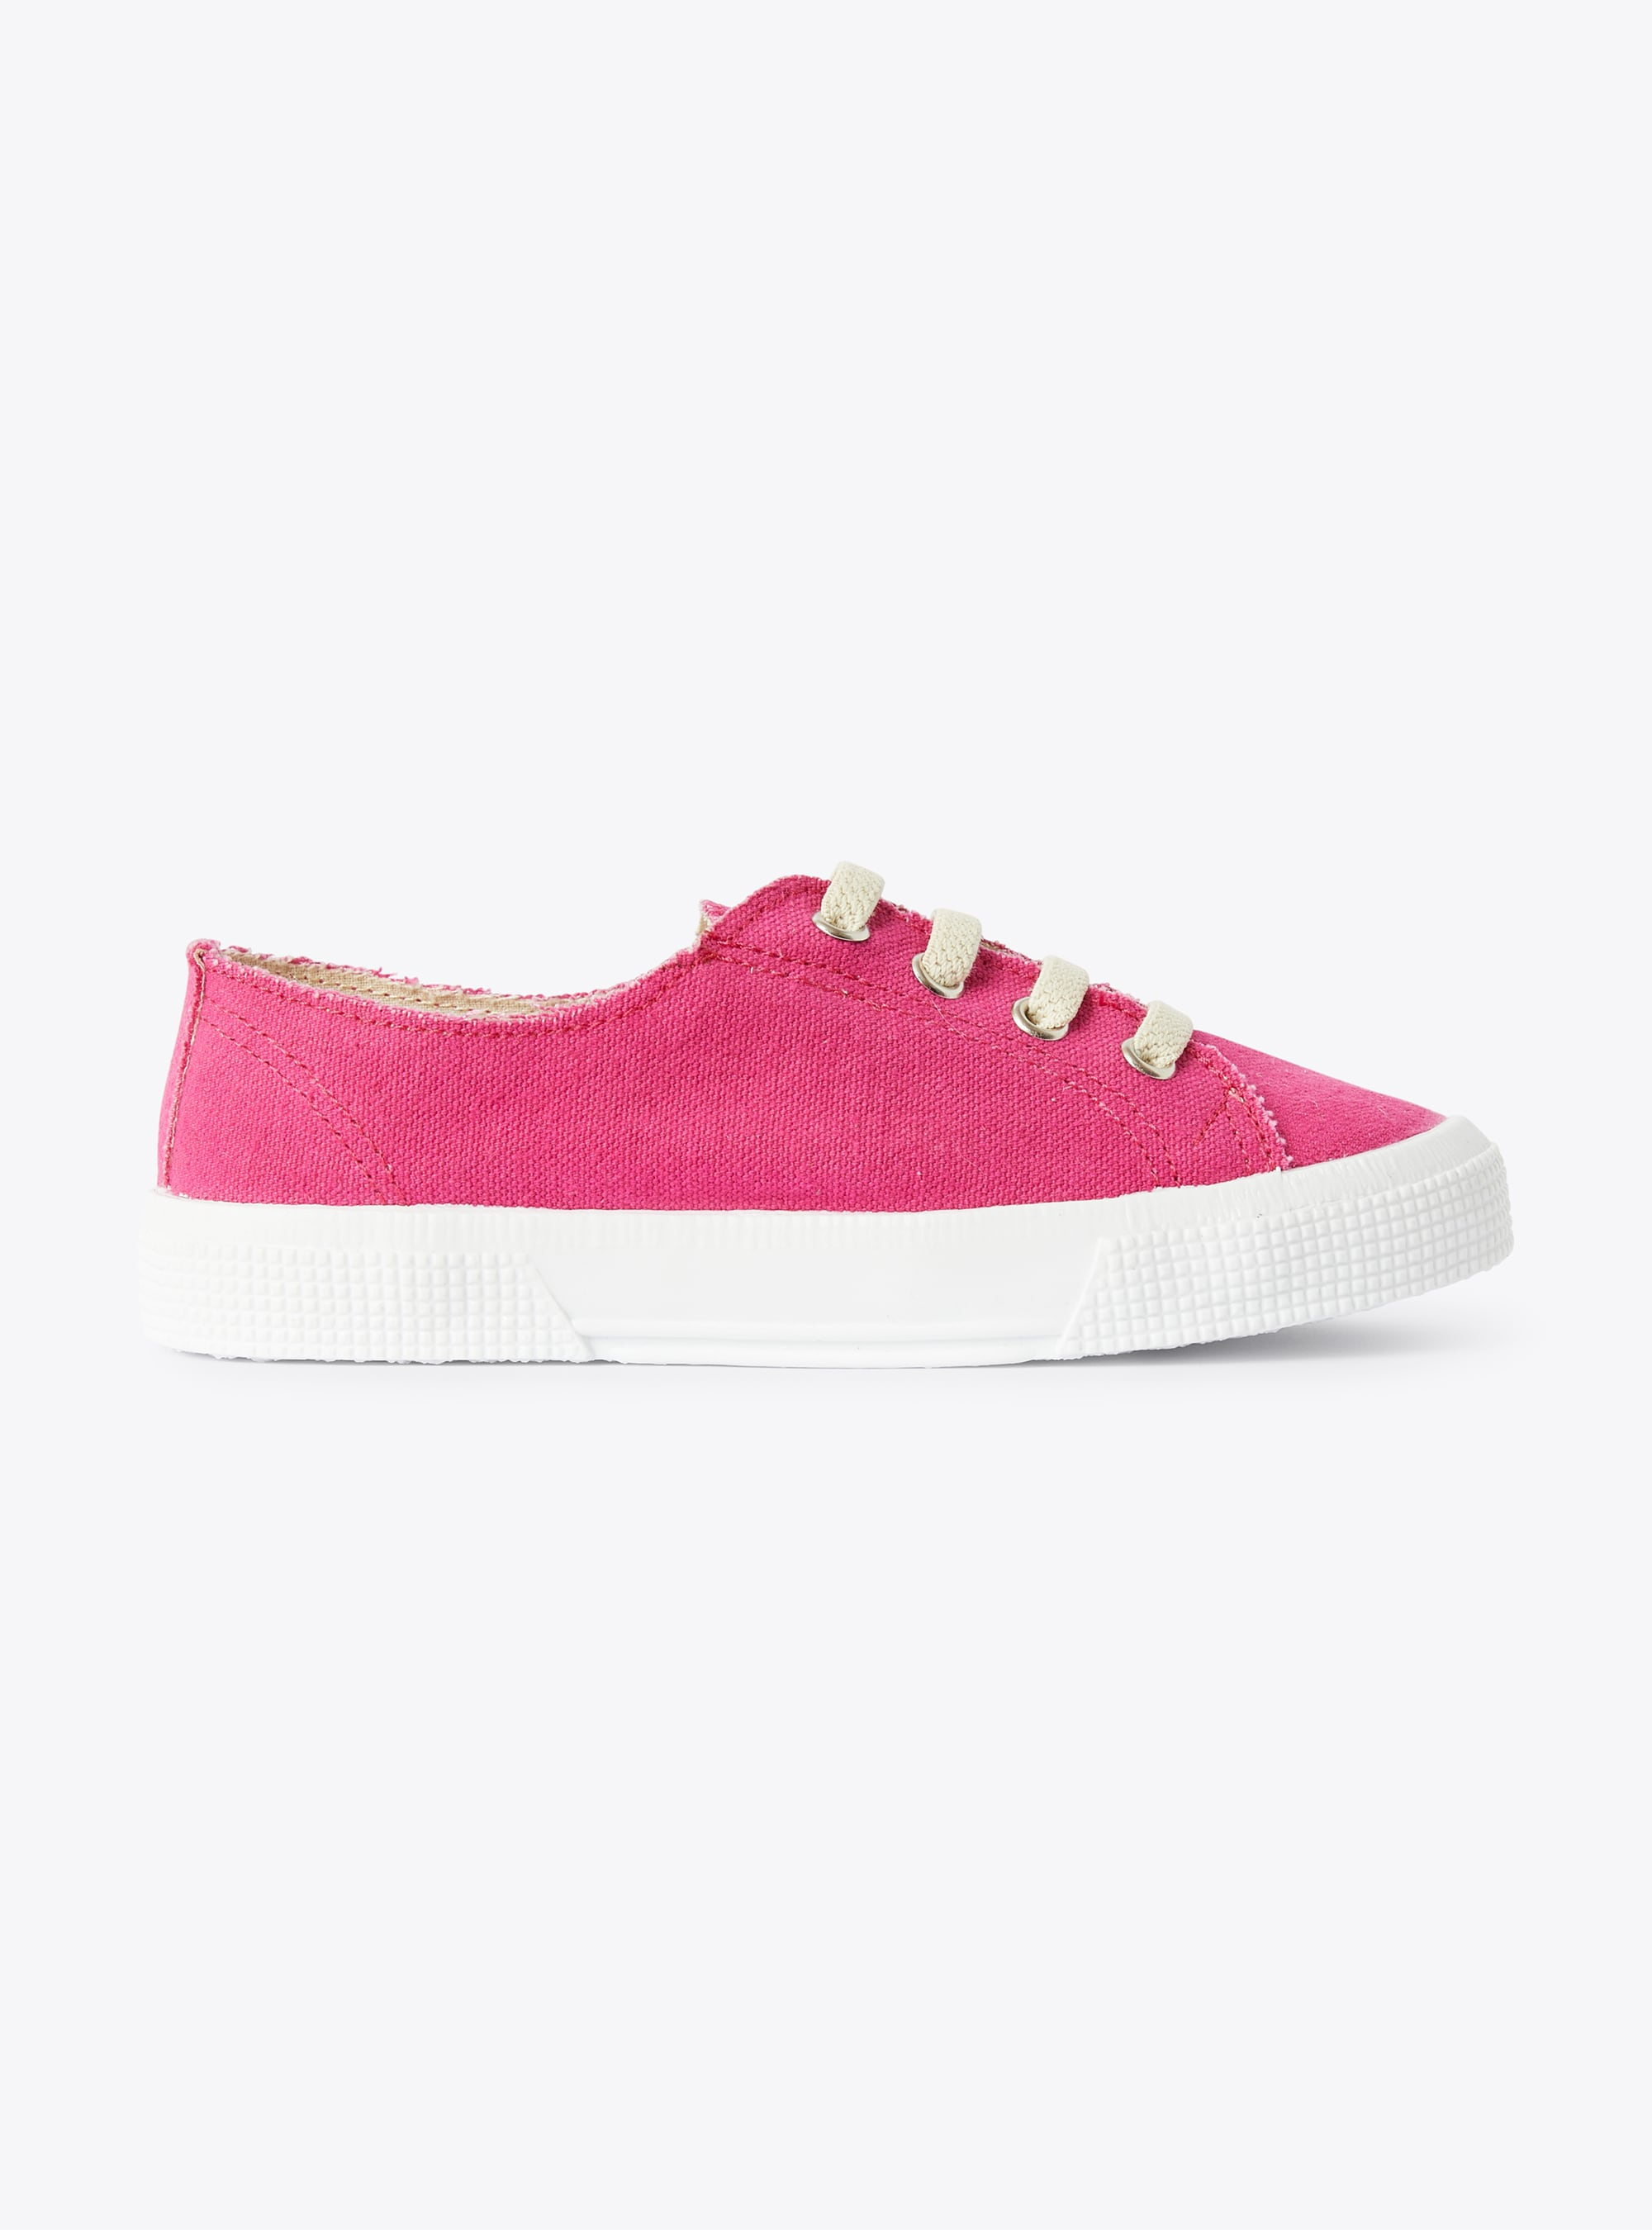 Sneaker in fuchsia-pink canvas - Fuchsia | Il Gufo